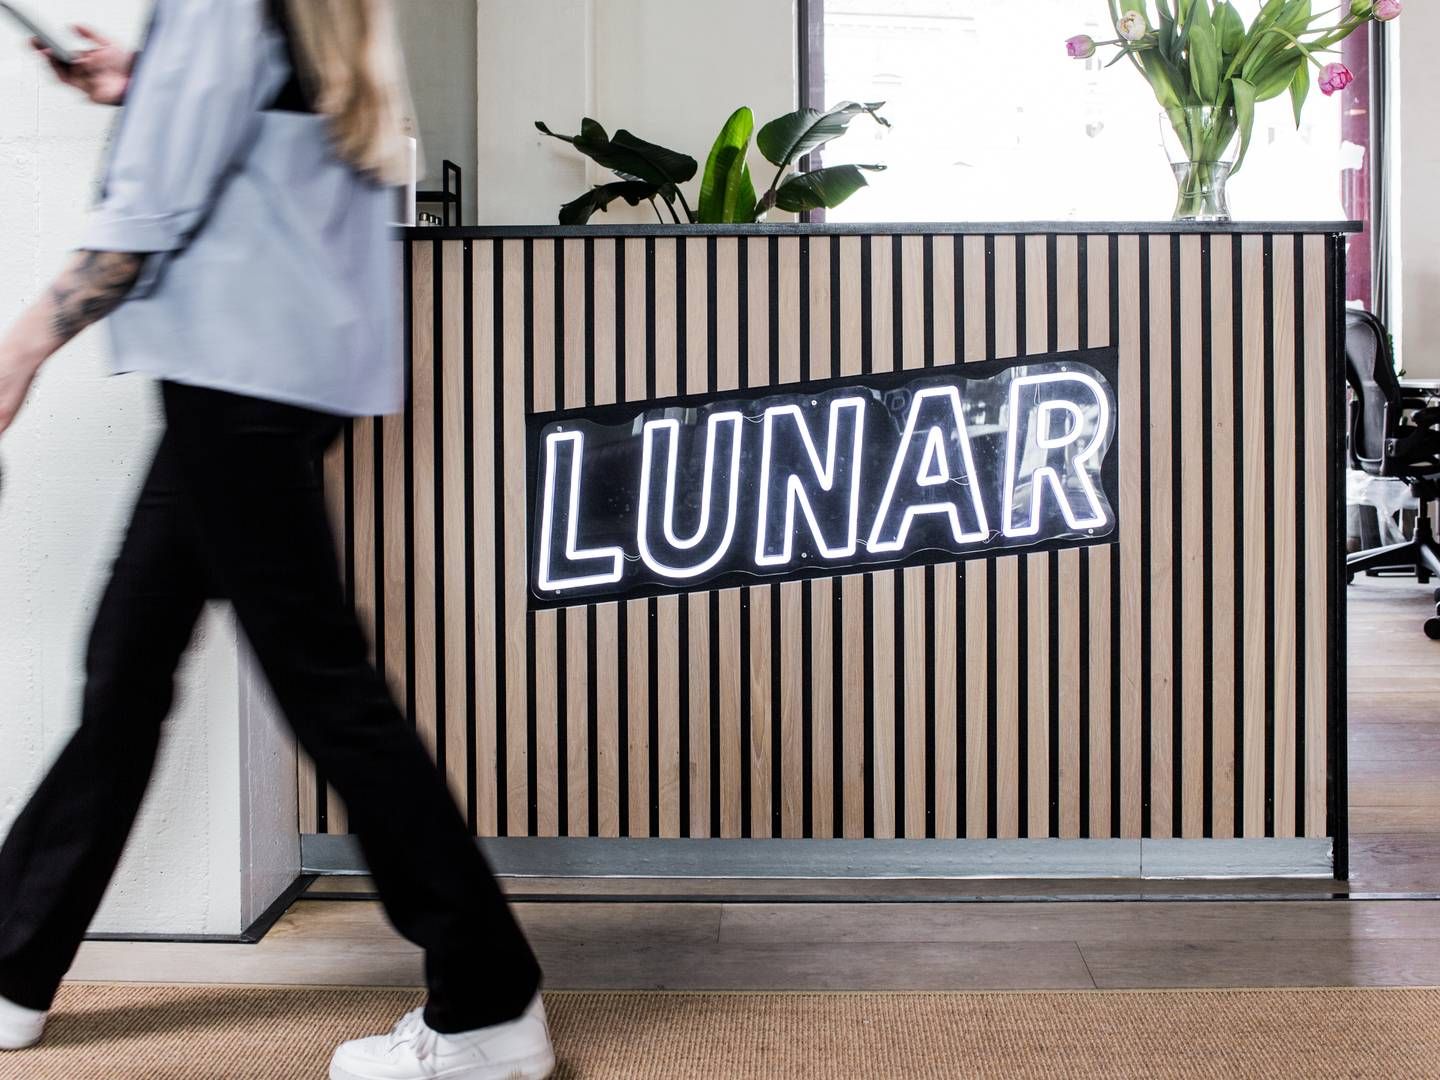 Lunar er havnet i problemer med sit opkøb af norske Instabank, som ikke ser ud til at falde på plads til en tidligere aftalt deadline. | Foto: PR/Lunar Bank